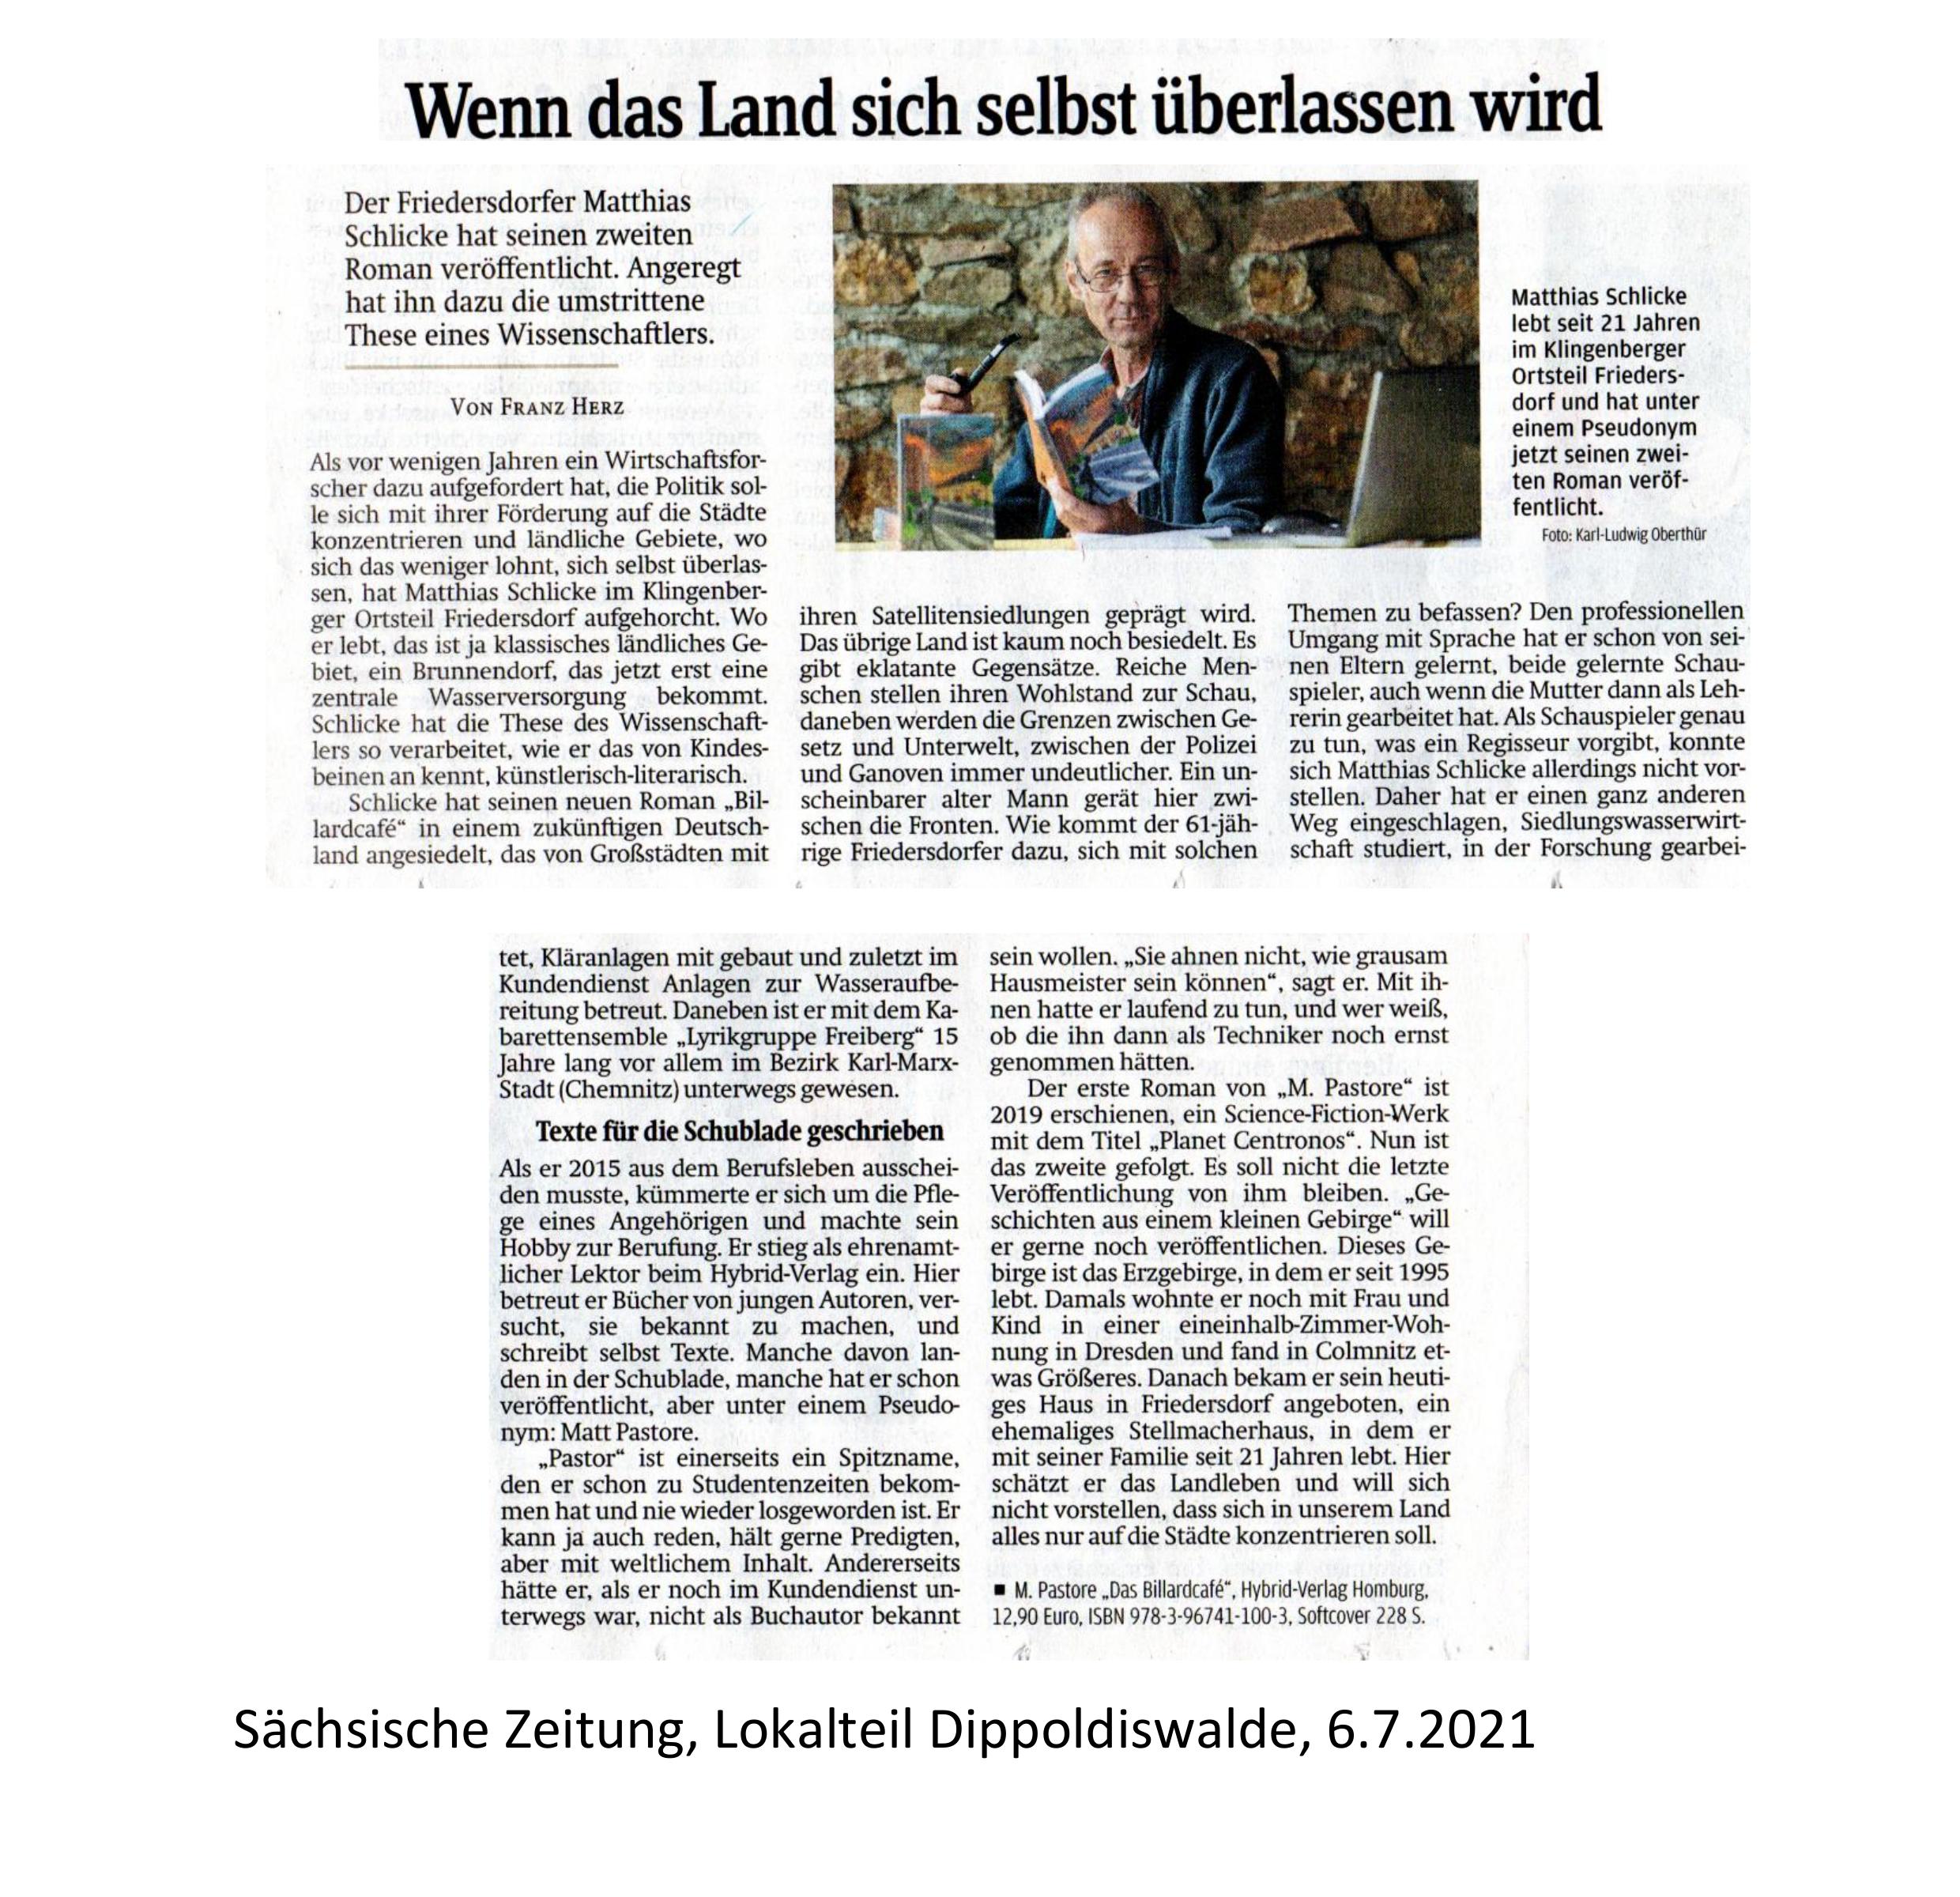 Artikel "Wenn das Land sich selbst überlassen wird" in der Sächsischen Zeitung